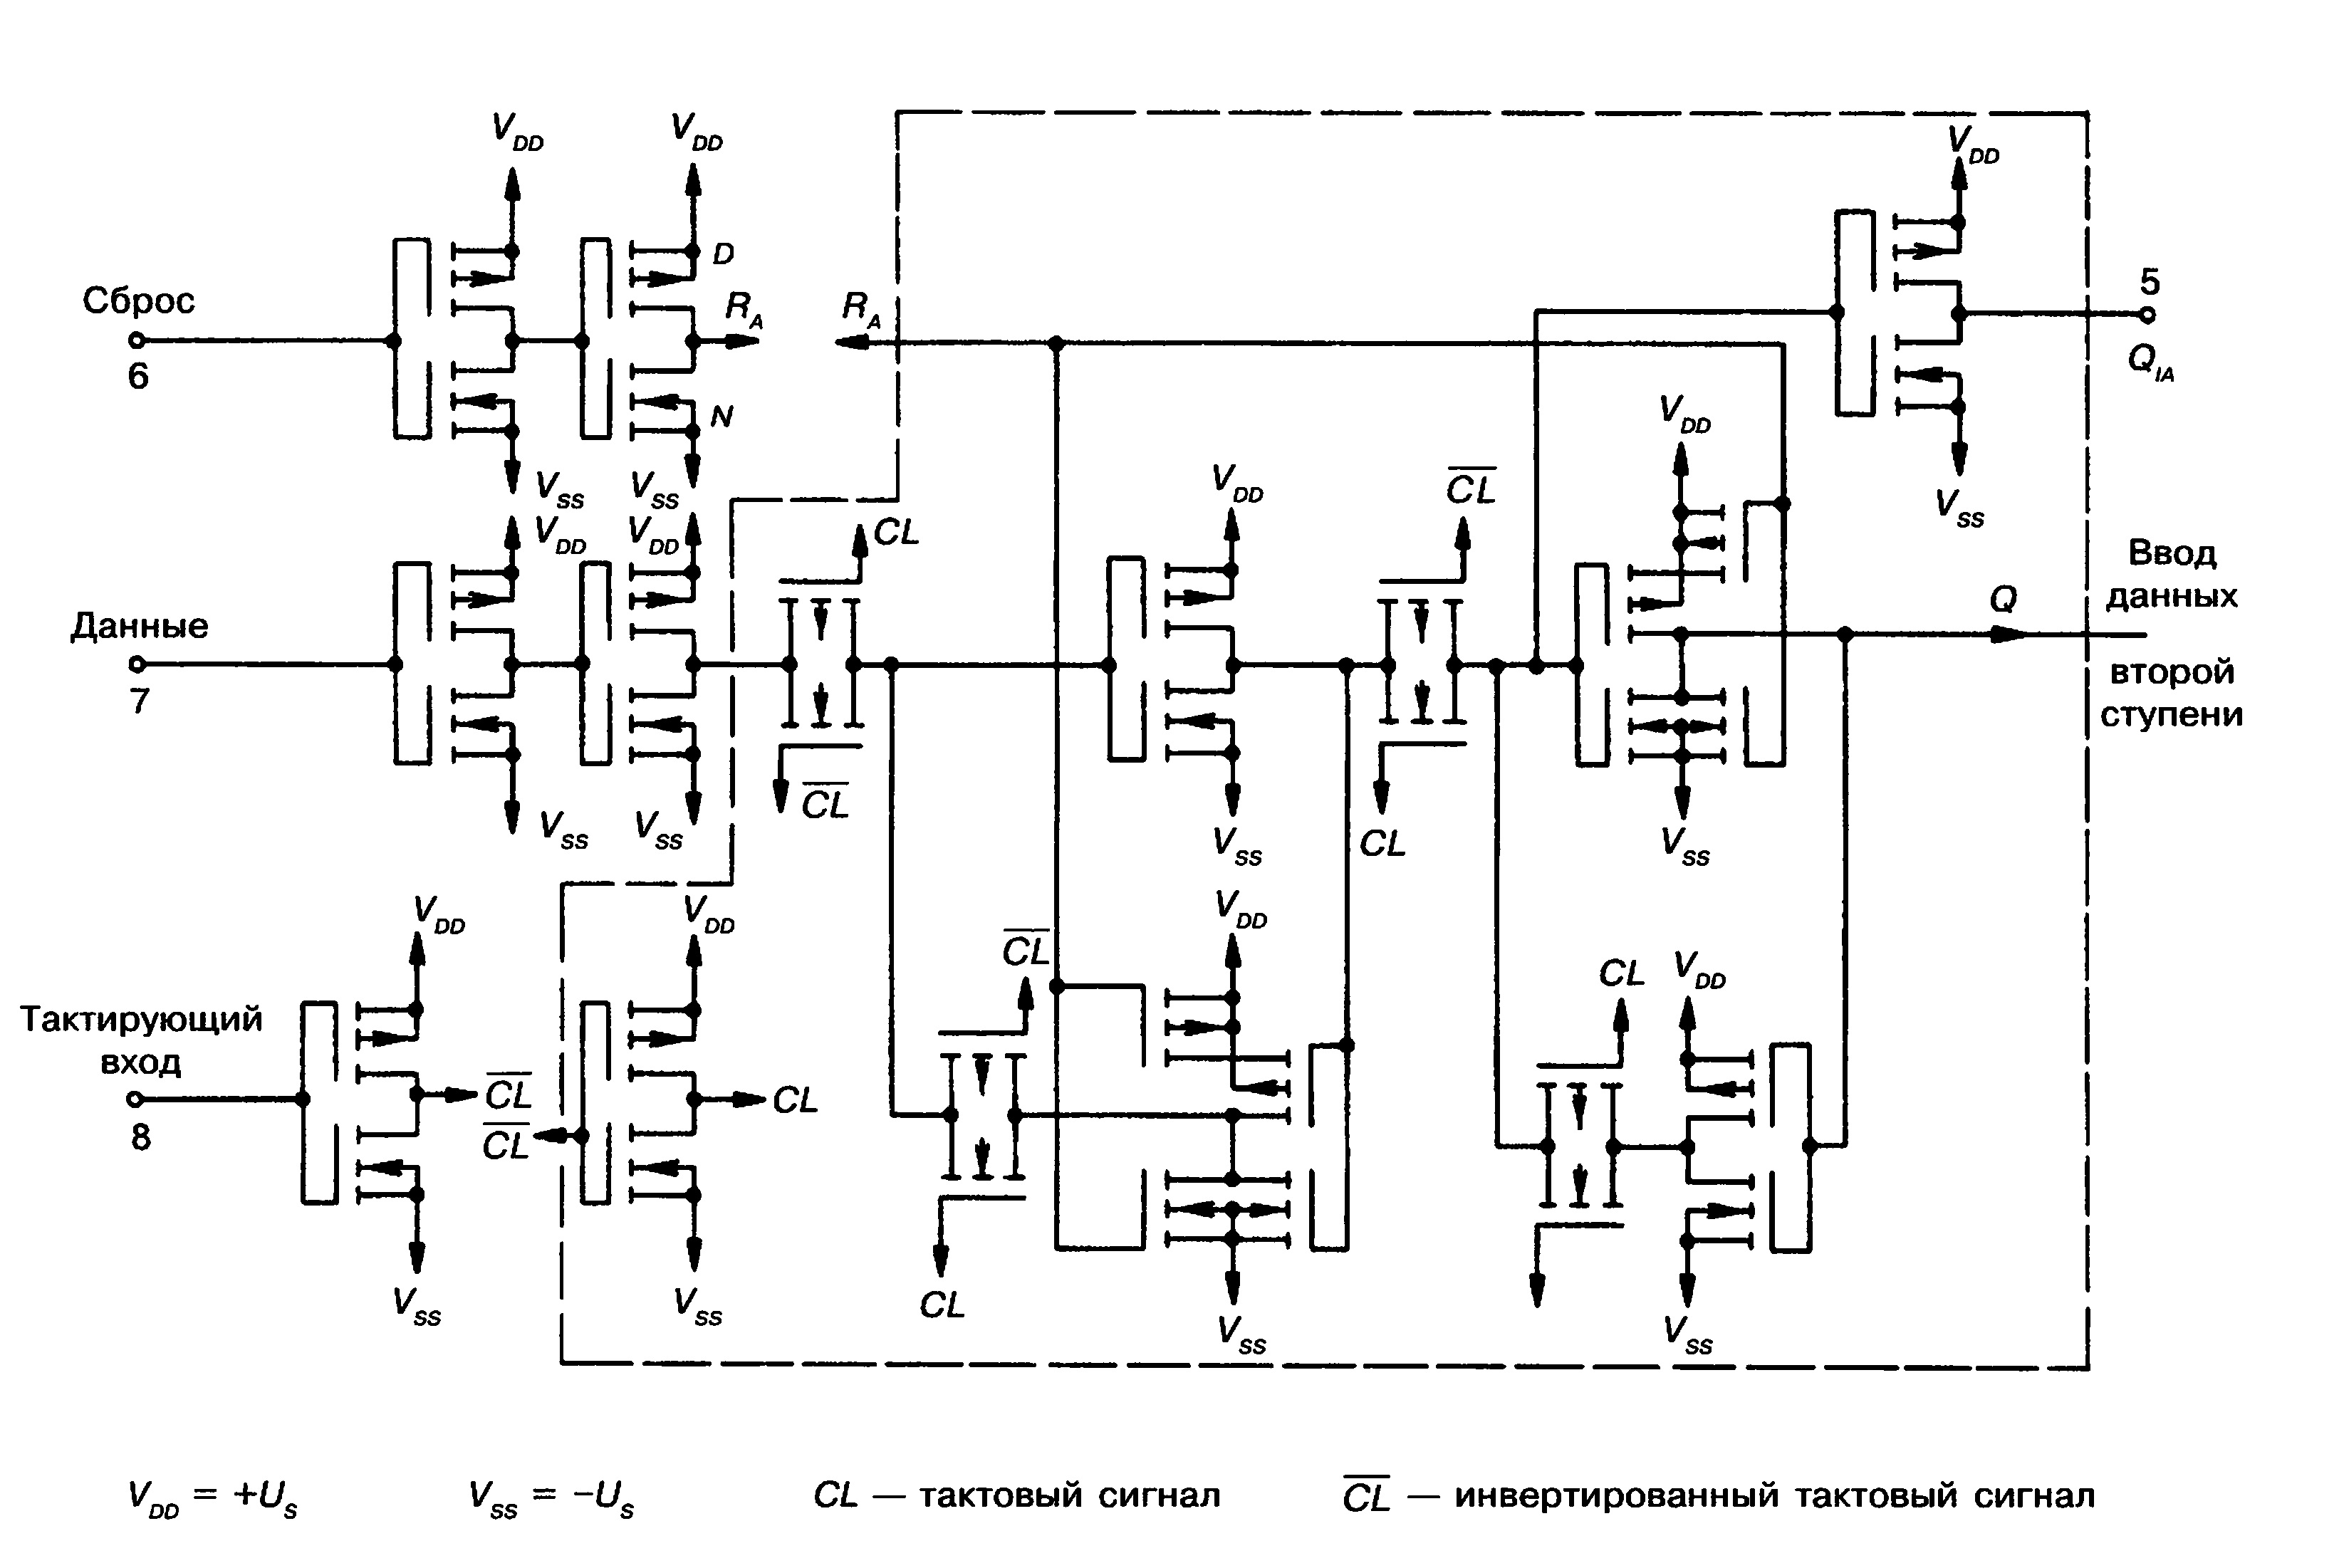 Схема КМОП-4-битного сдвигового регистра CD 4015 A (RCA)